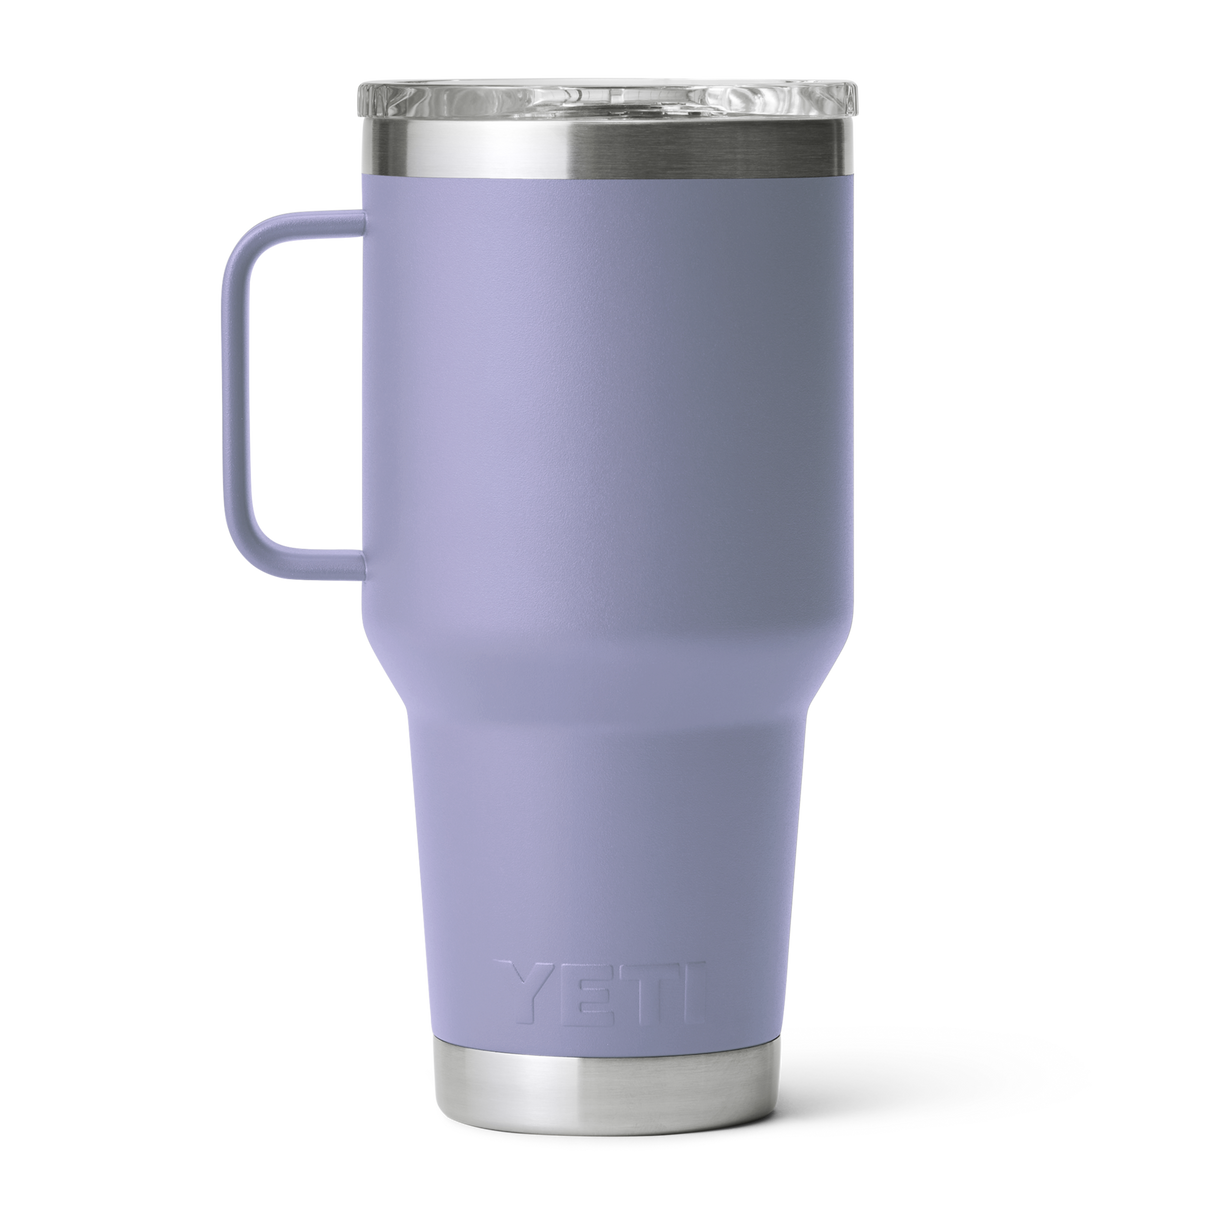 YETI Rambler 30 oz Travel Mug